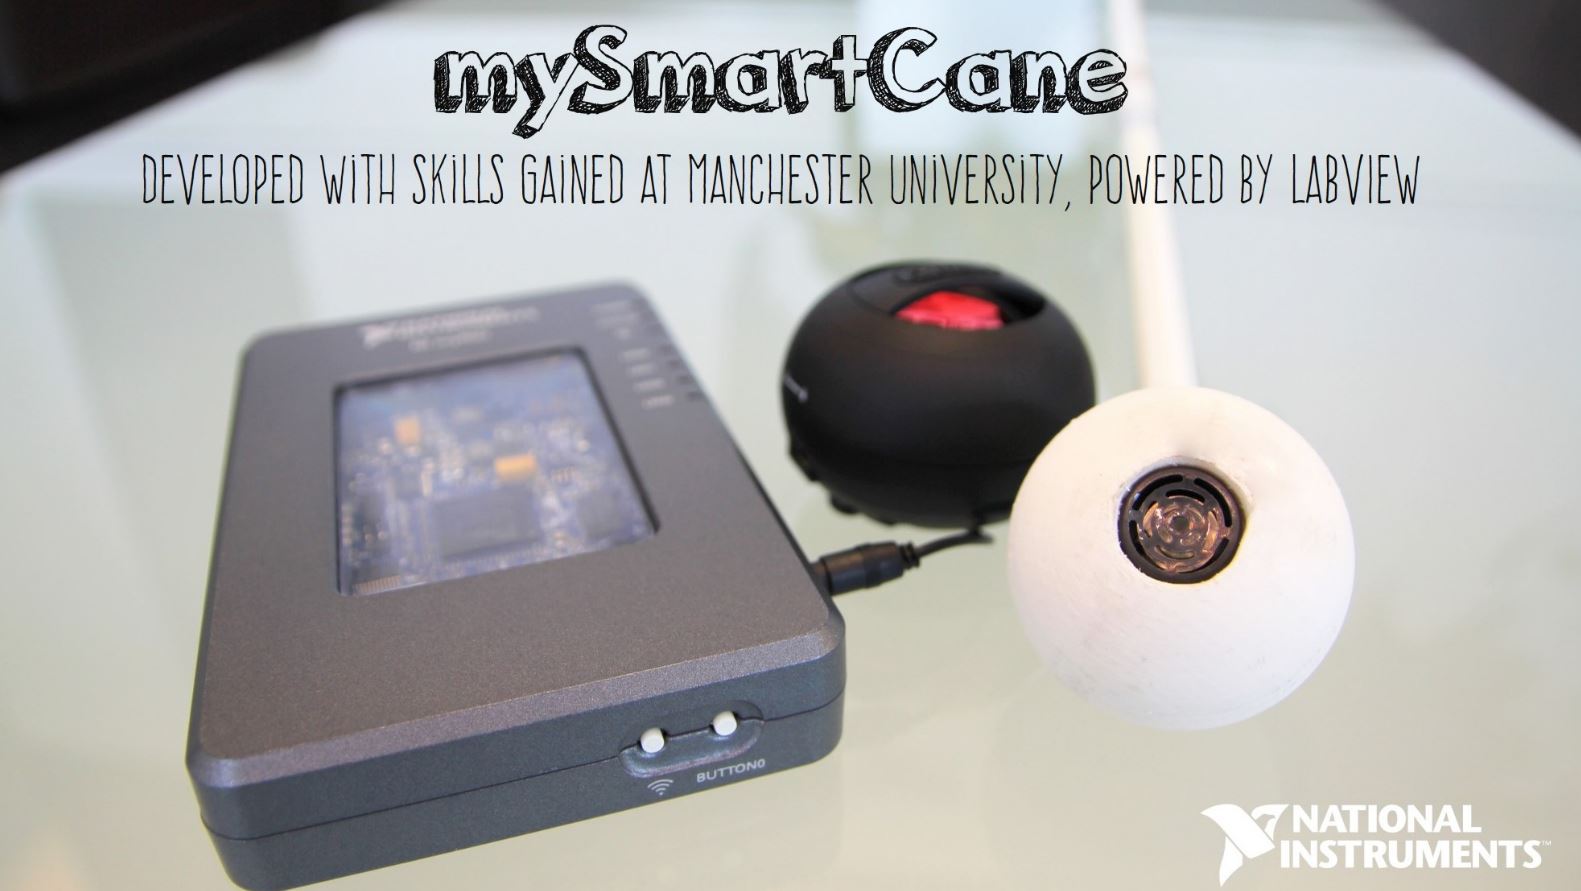 Устройство под названием mySmartCane представляет собой сферический наконечник трости с ультразвуковым датчиком расстояния. Датчик подключен к вычислительной платформе NI myRIO, которая переводит показания датчика в звуковой сигнал, подаваемый в наушники пользователя. 